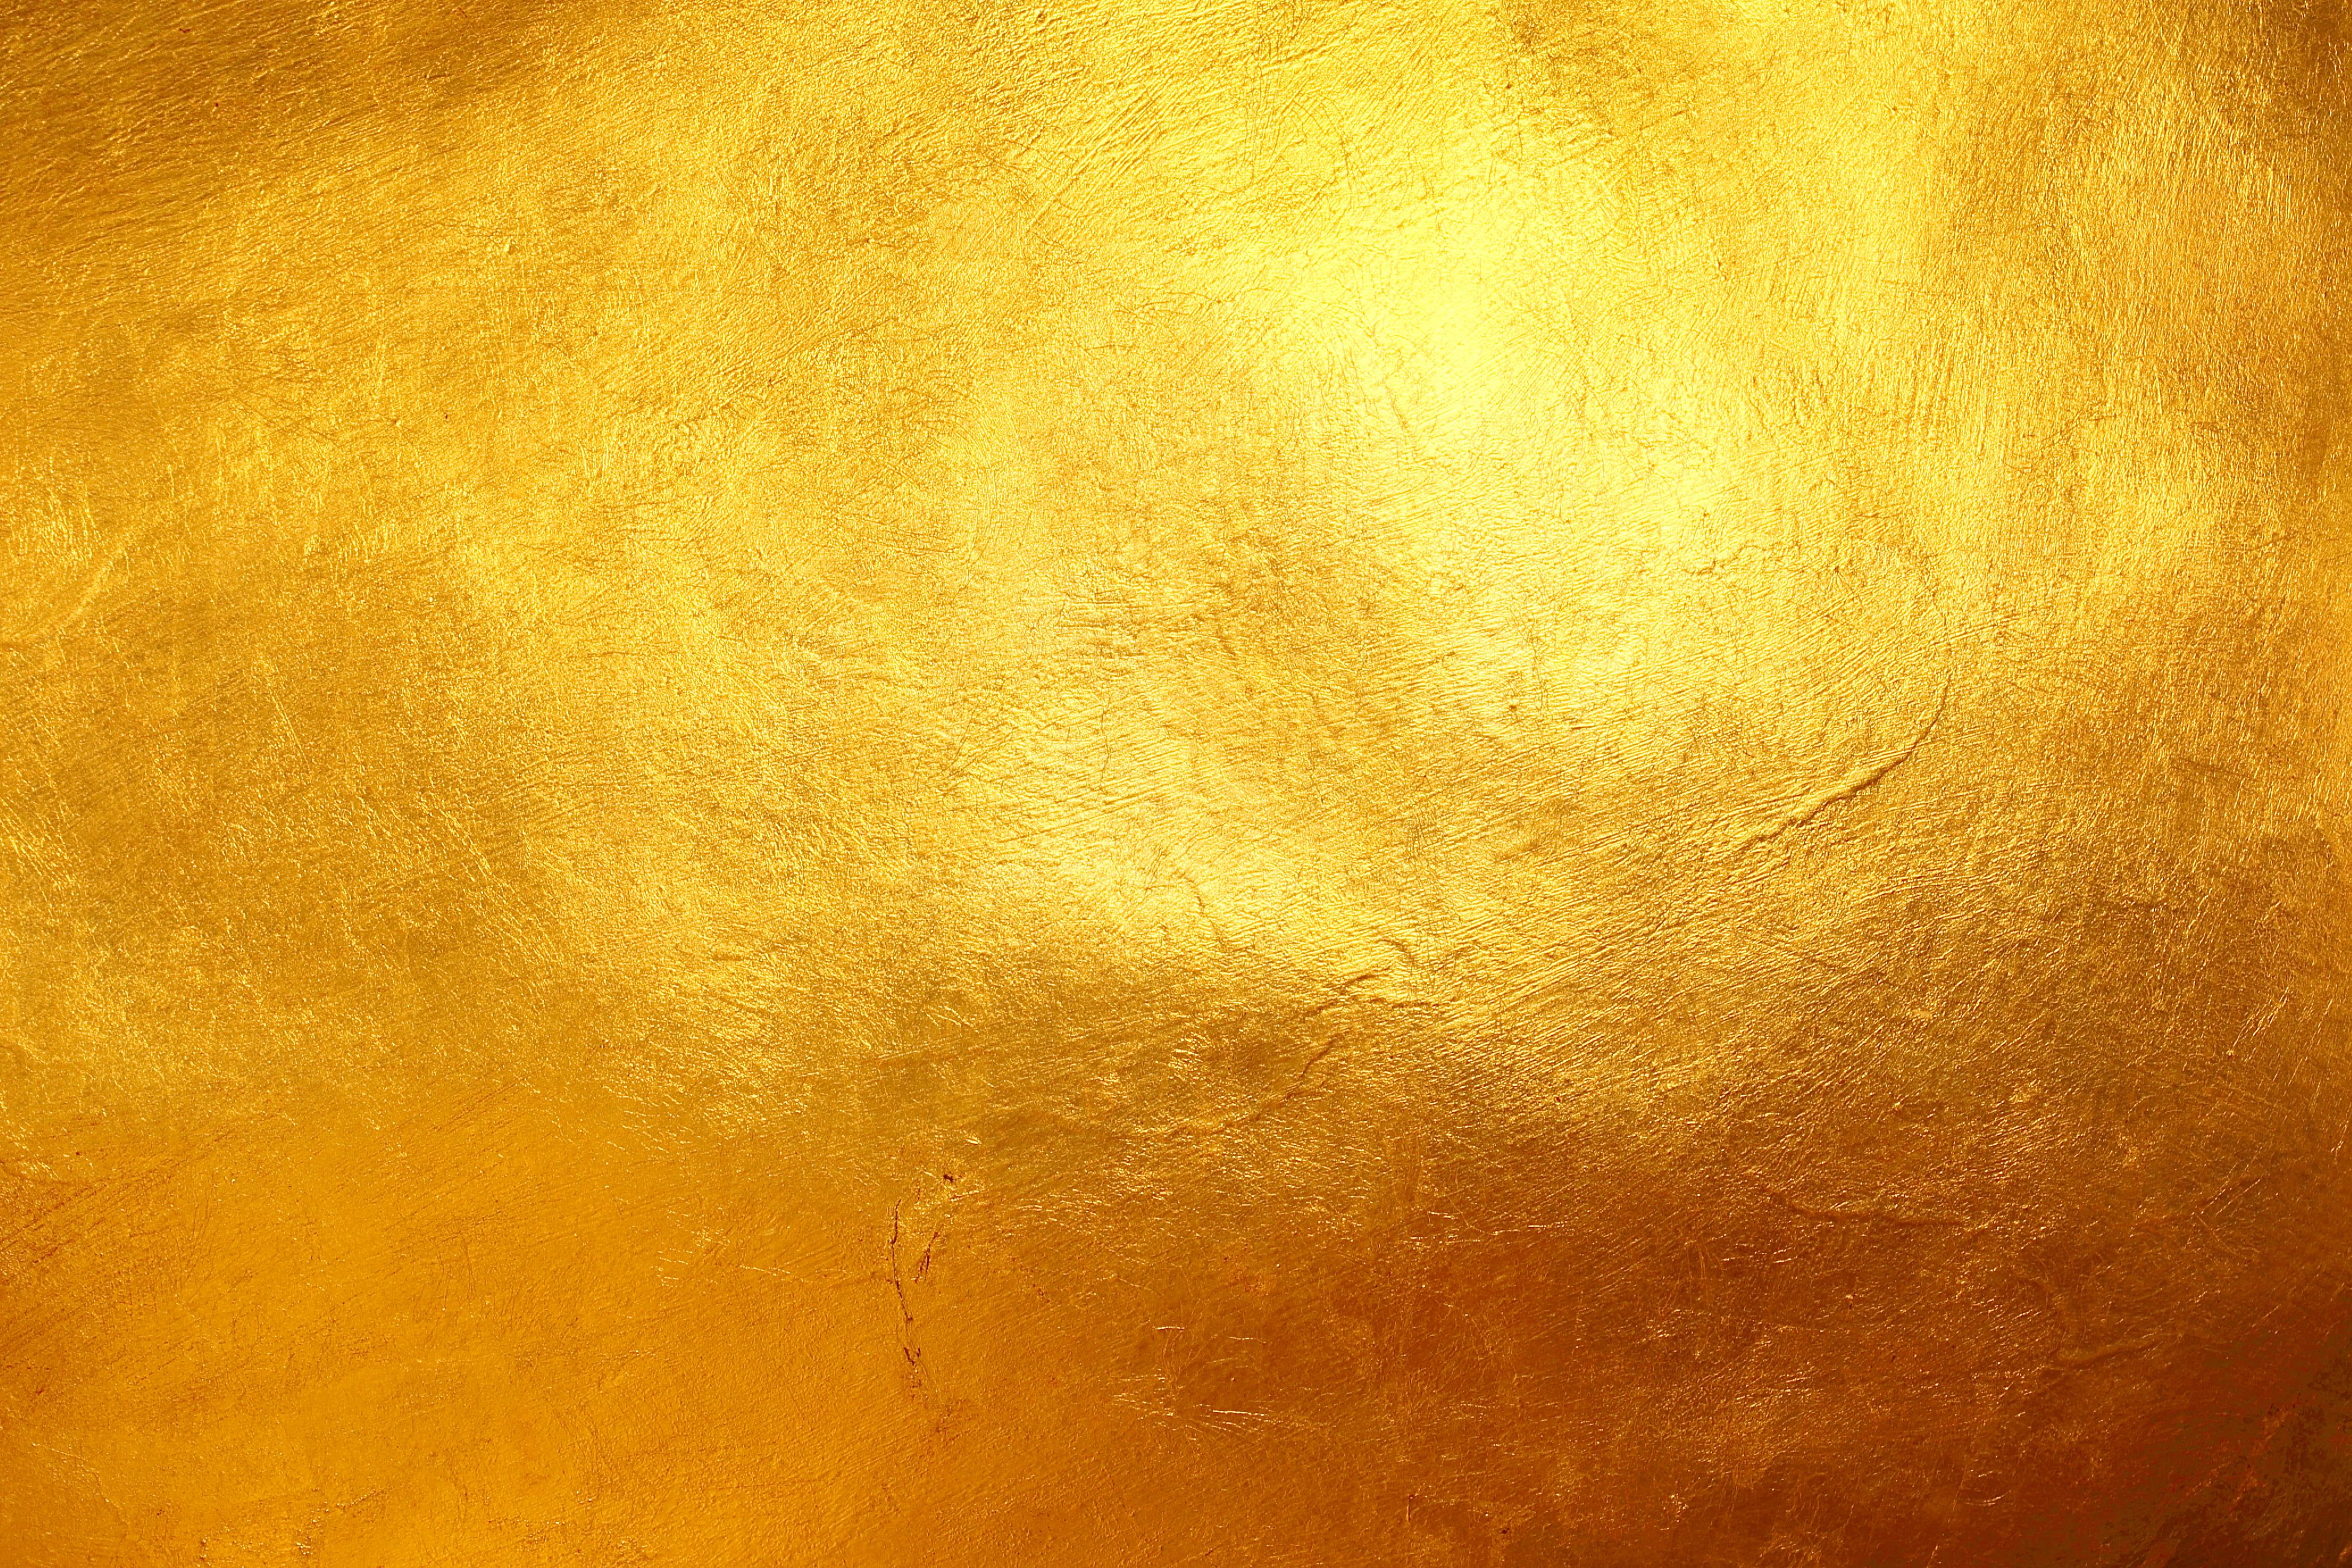 Độc đáo và thu hút, nền vàng hoa văn sẽ khiến cho màn hình điện thoại của bạn trở nên nổi bật. Với màu vàng ấm áp của nó, hình nền này sẽ mang đến một không gian yên bình và ấm cúng. Những họa tiết hoa văn xen kẽ trên nền vàng càng làm bạn cảm thấy yêu thích hơn. Hãy xem để trải nghiệm sự đẹp đẽ này.